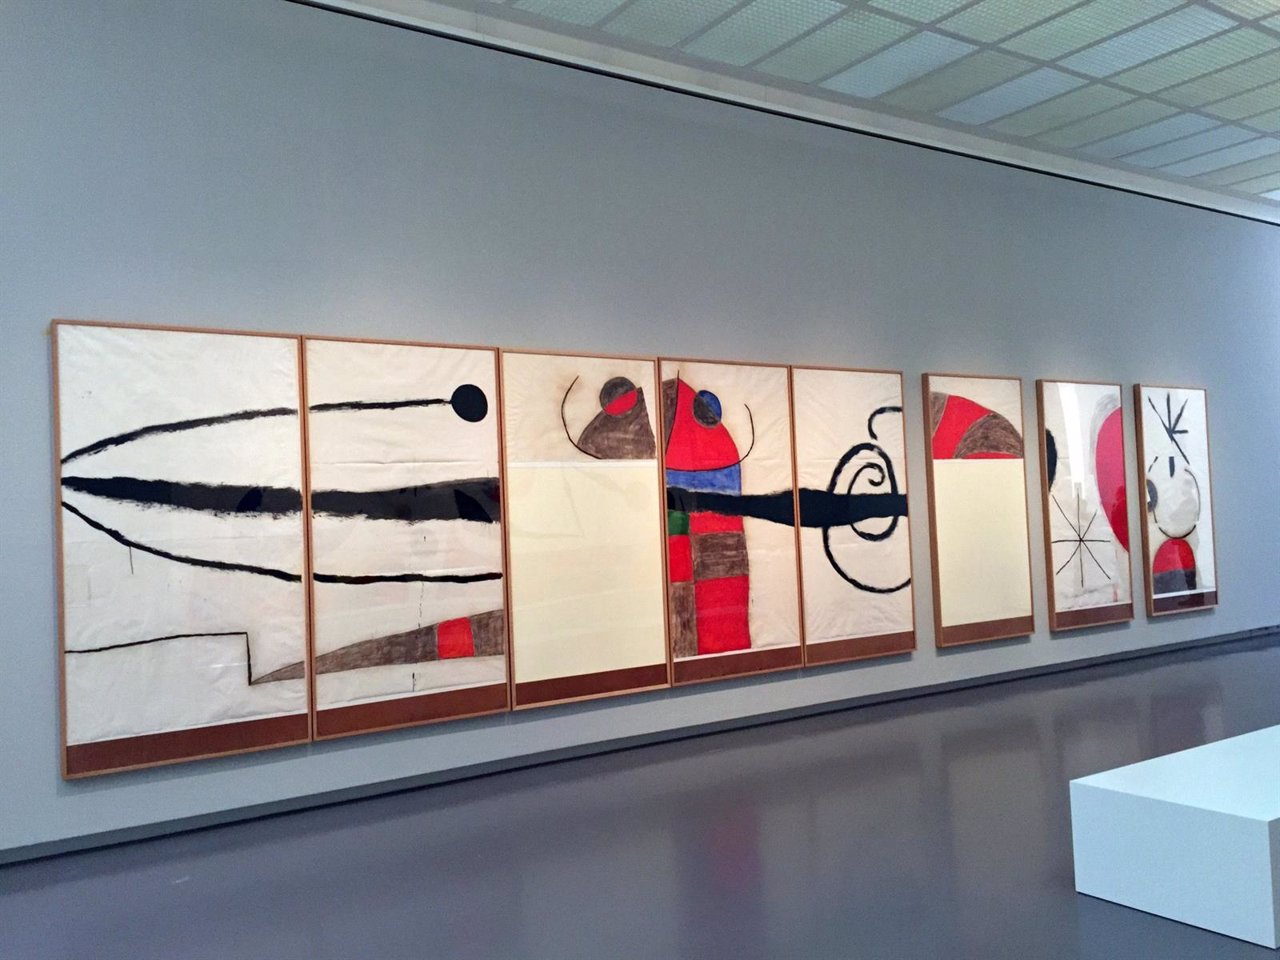 Obras de Joan Miró